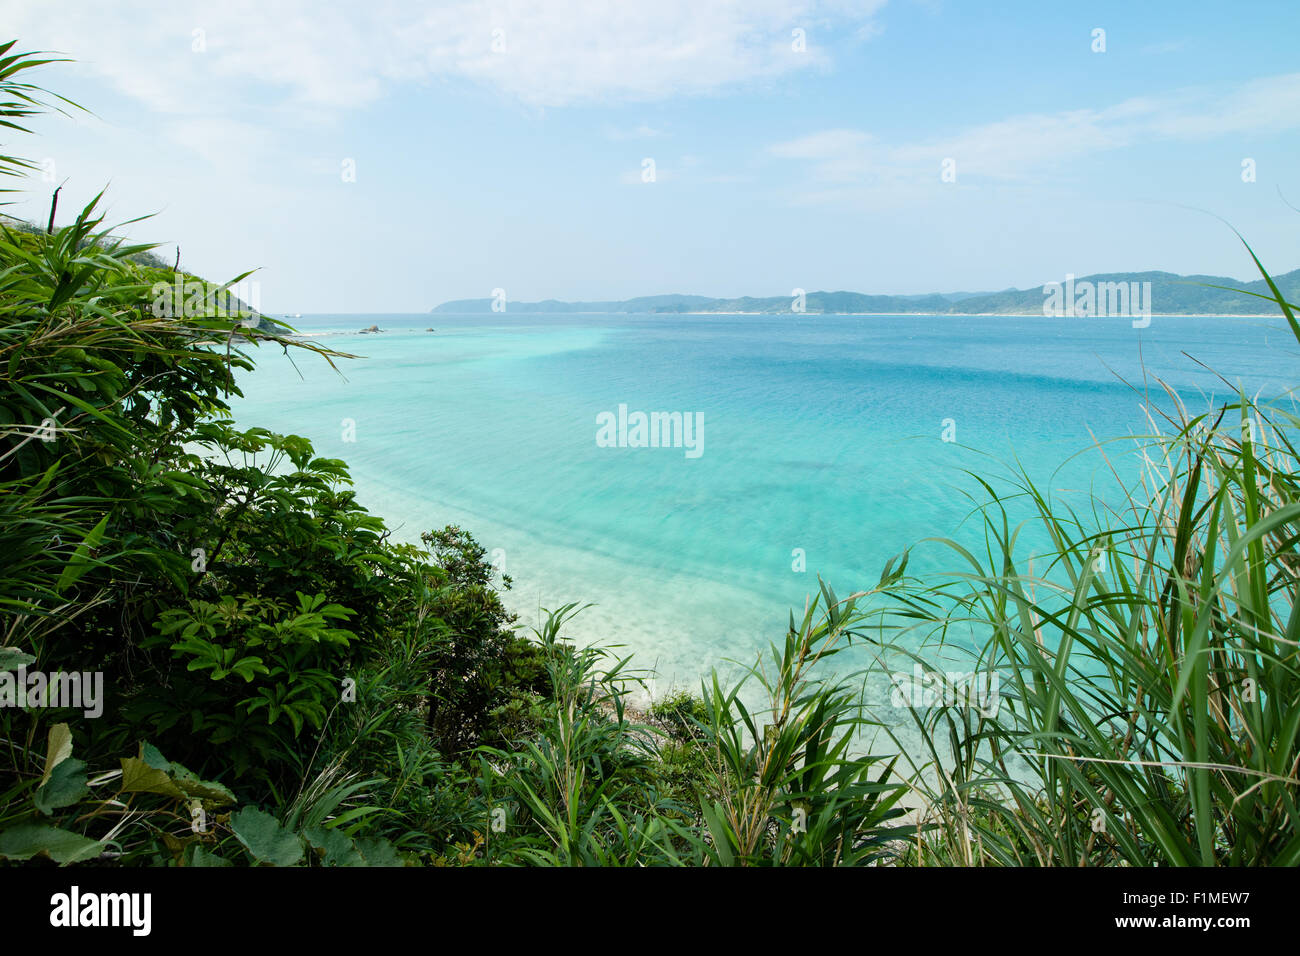 Belle plage tropical paradise de Amami Oshima dans le sud du Japon près d'Okinawa Banque D'Images